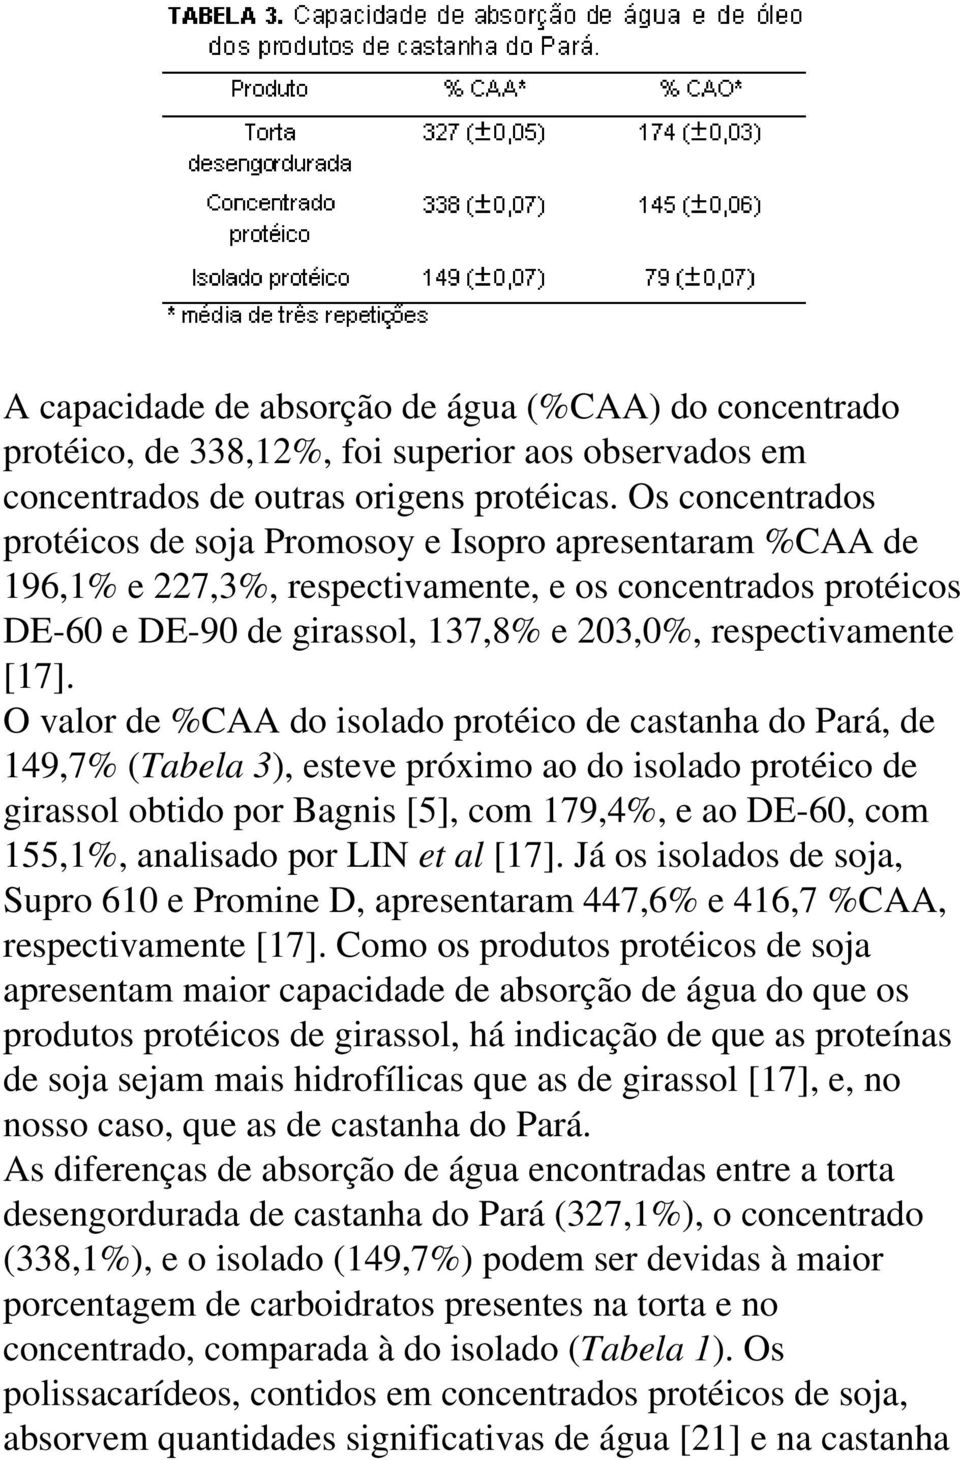 O valor de %CAA do isolado protéico de castanha do Pará, de 149,7% (Tabela 3), esteve próximo ao do isolado protéico de girassol obtido por Bagnis [5], com 179,4%, e ao DE-60, com 155,1%, analisado